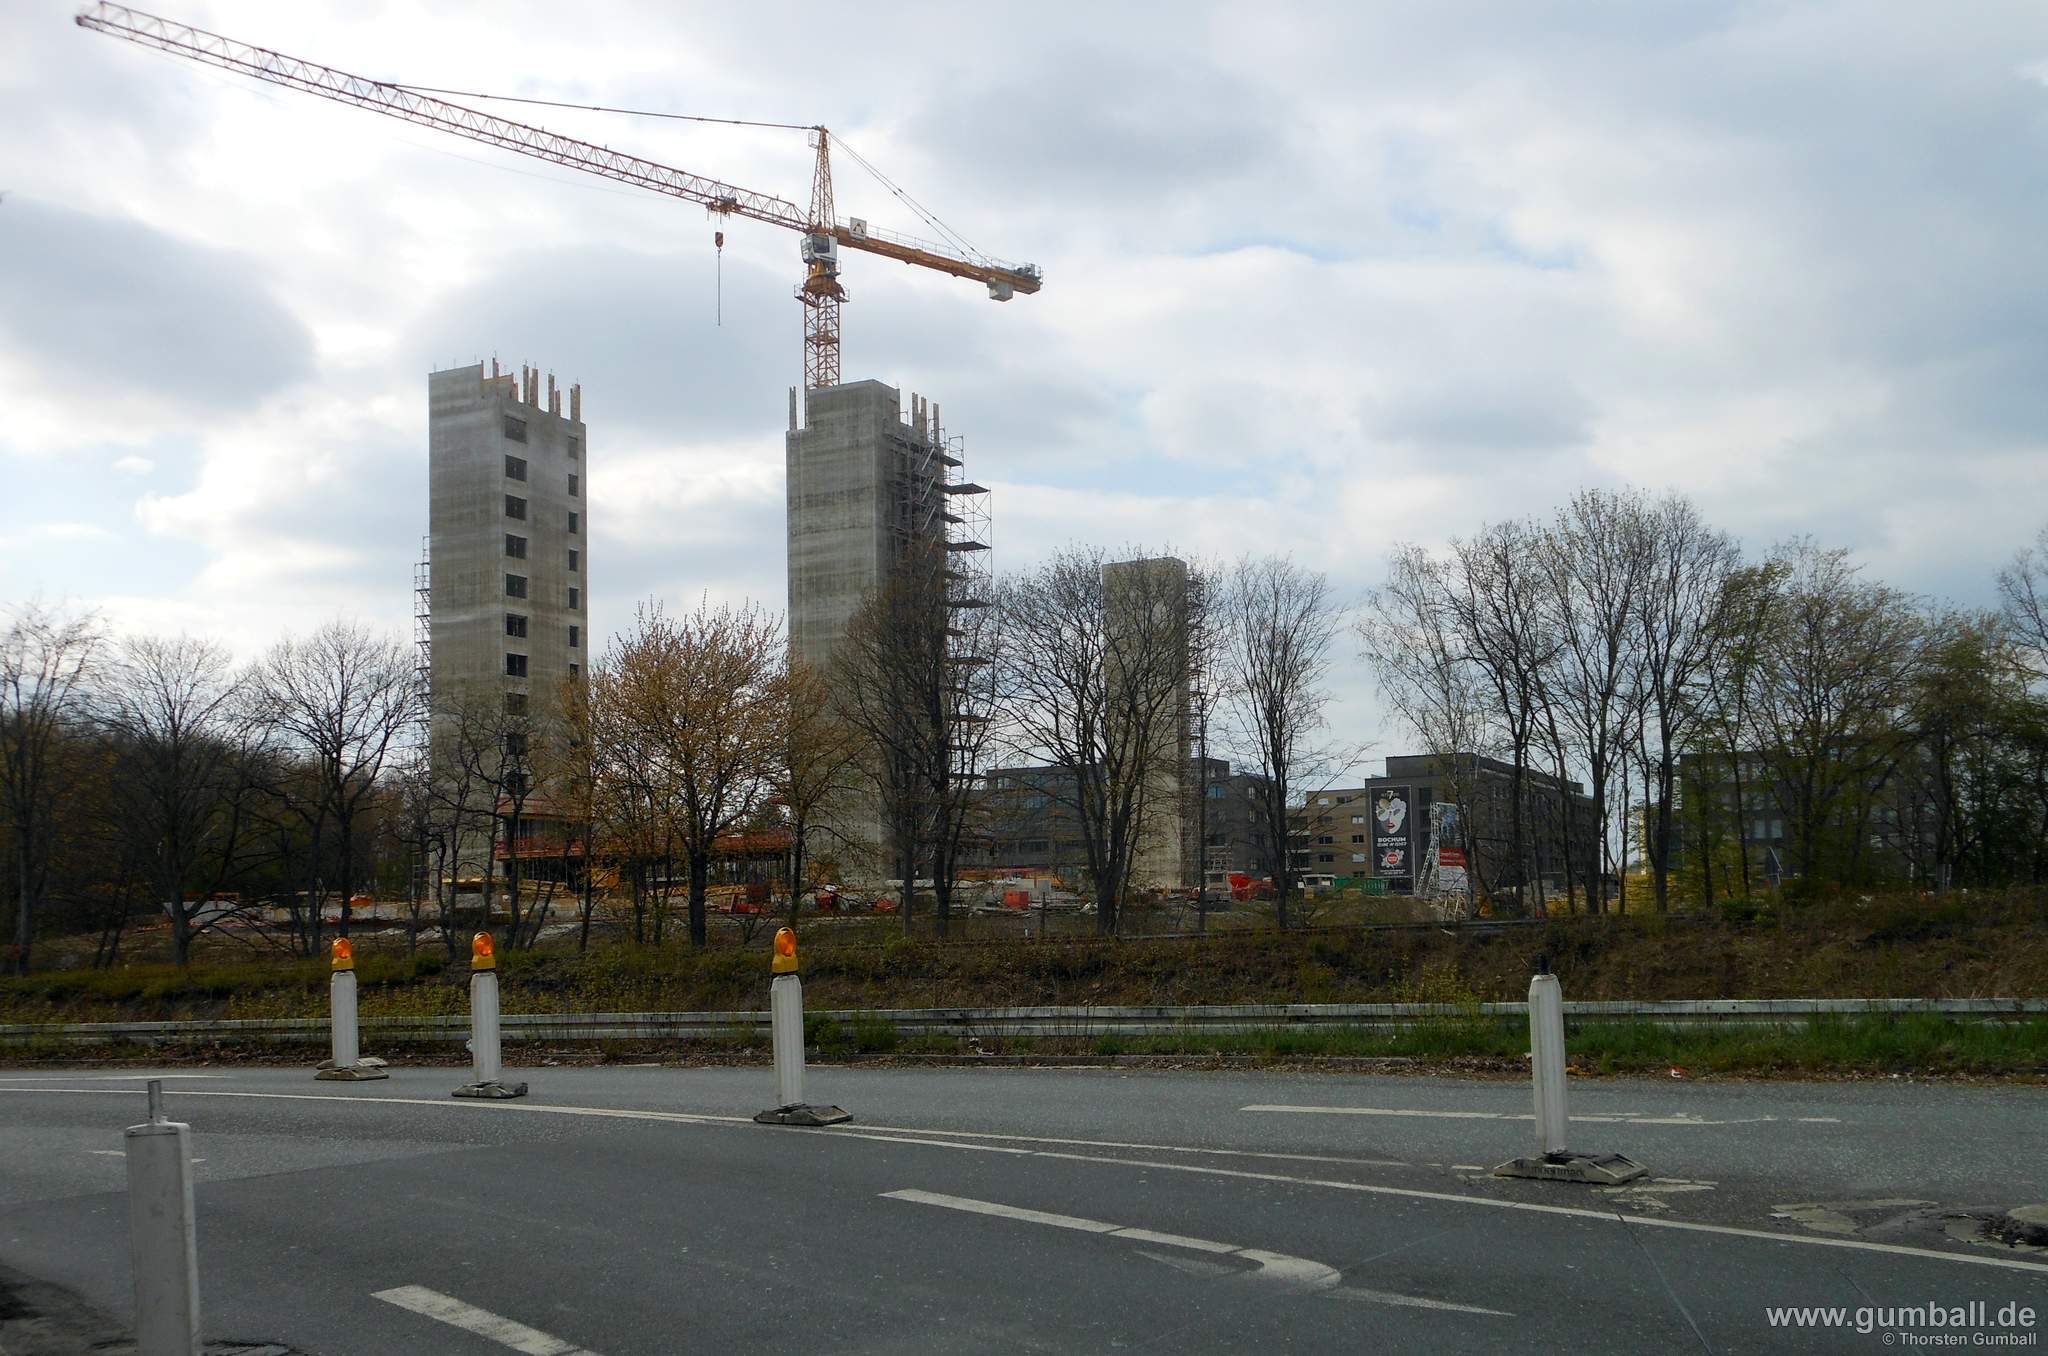 Seven Stones Baustelle, Bochum - April 2021 (6)